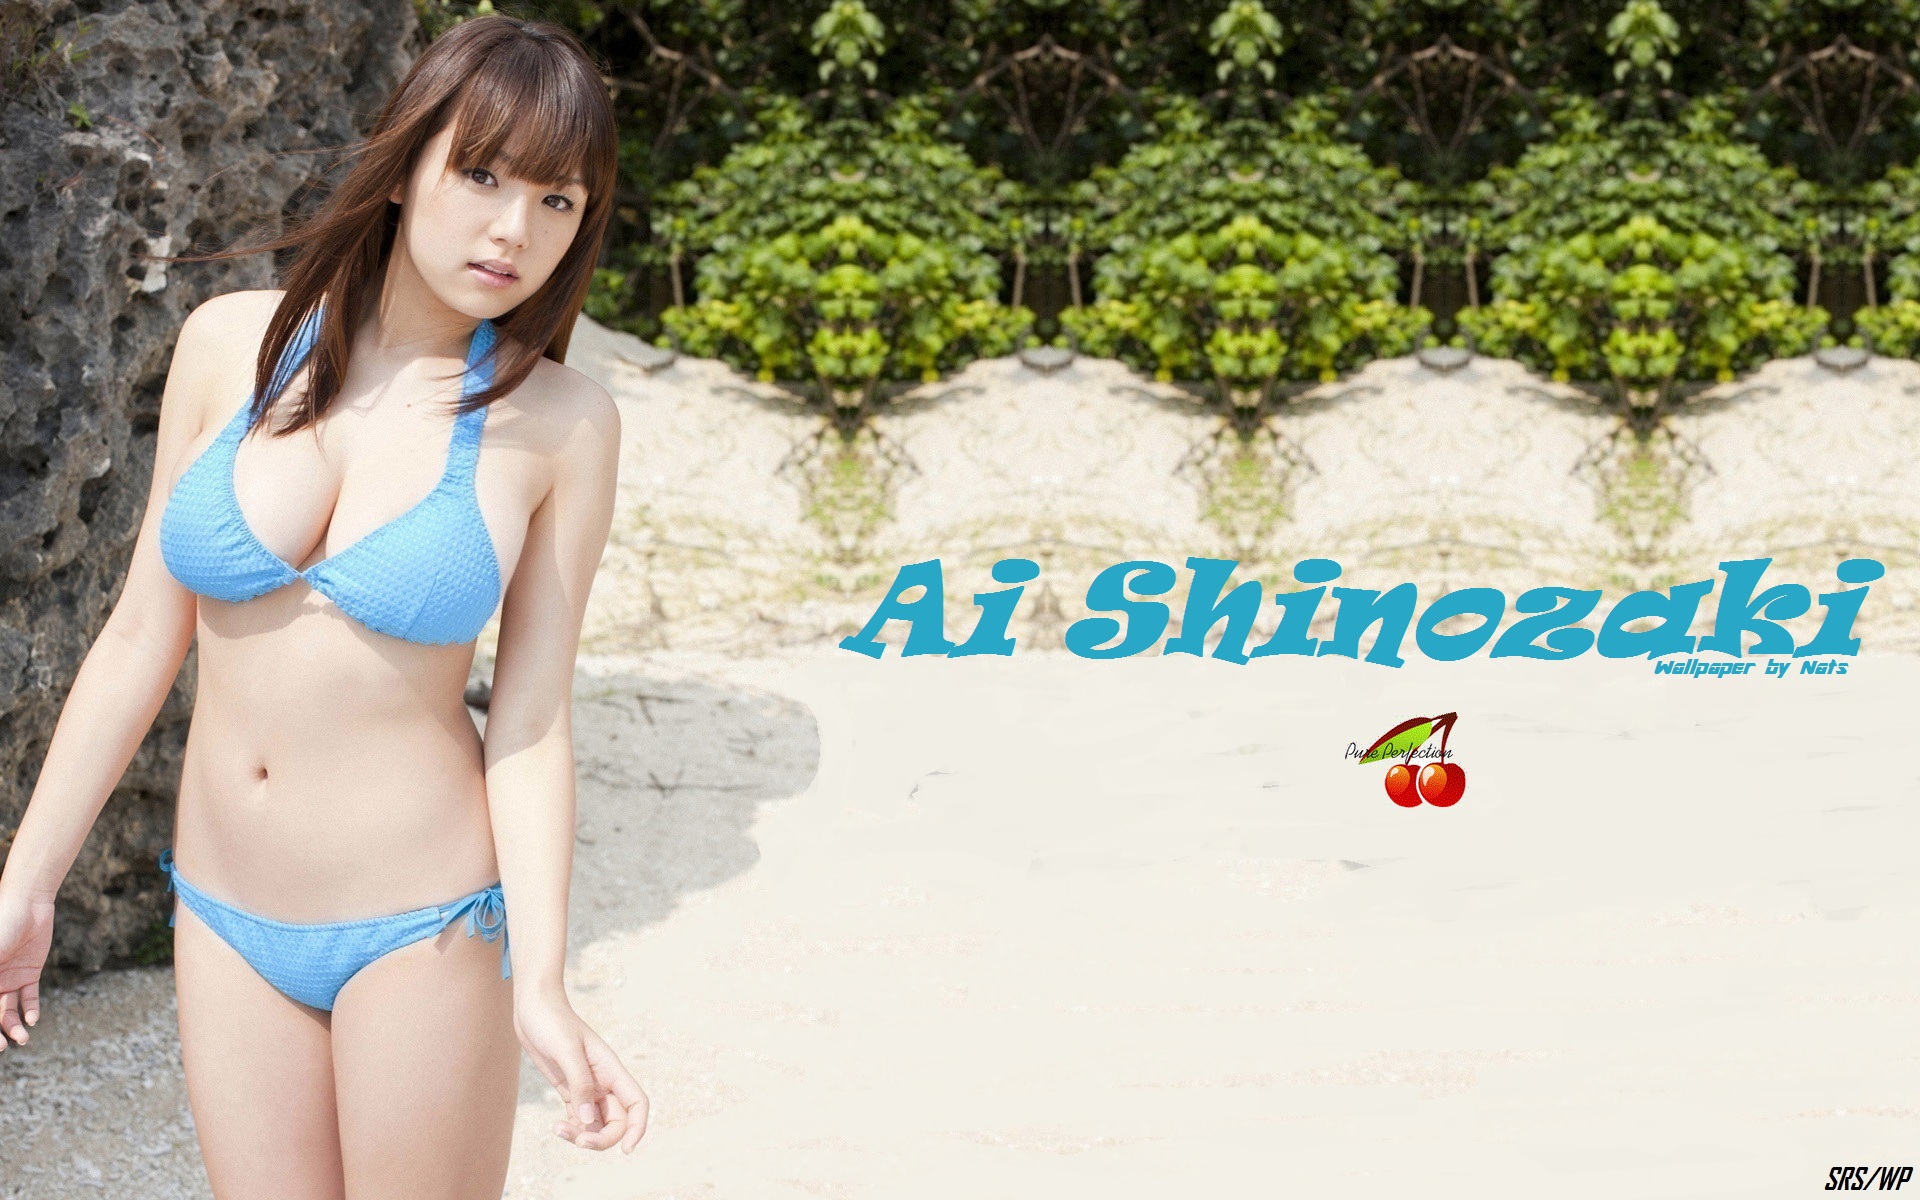 Download full size Ai Shinozaki wallpaper / Celebrities Female / 1920x1200